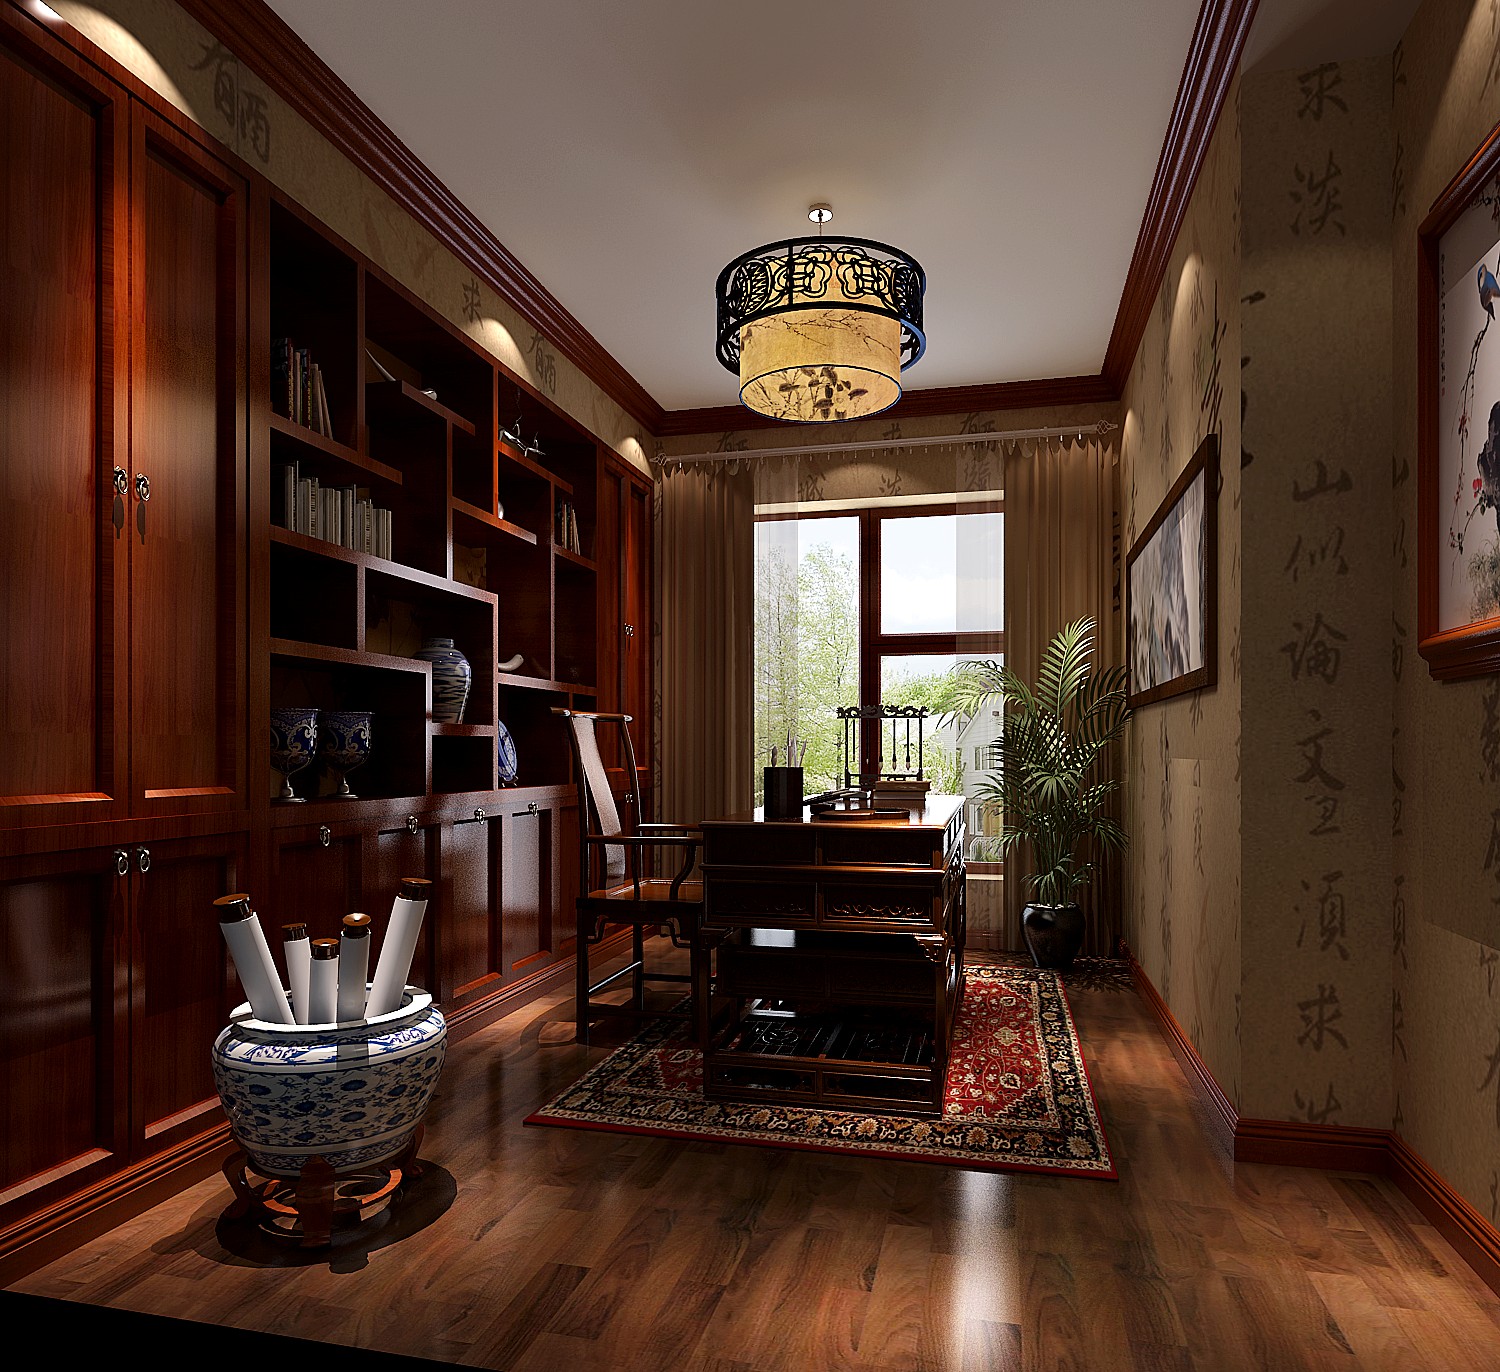 简约 中式 古典 高度国际 秦大涛 三居 别墅 白领 80后 书房图片来自北京高度国际装饰设计在富力新城中式典藏的分享